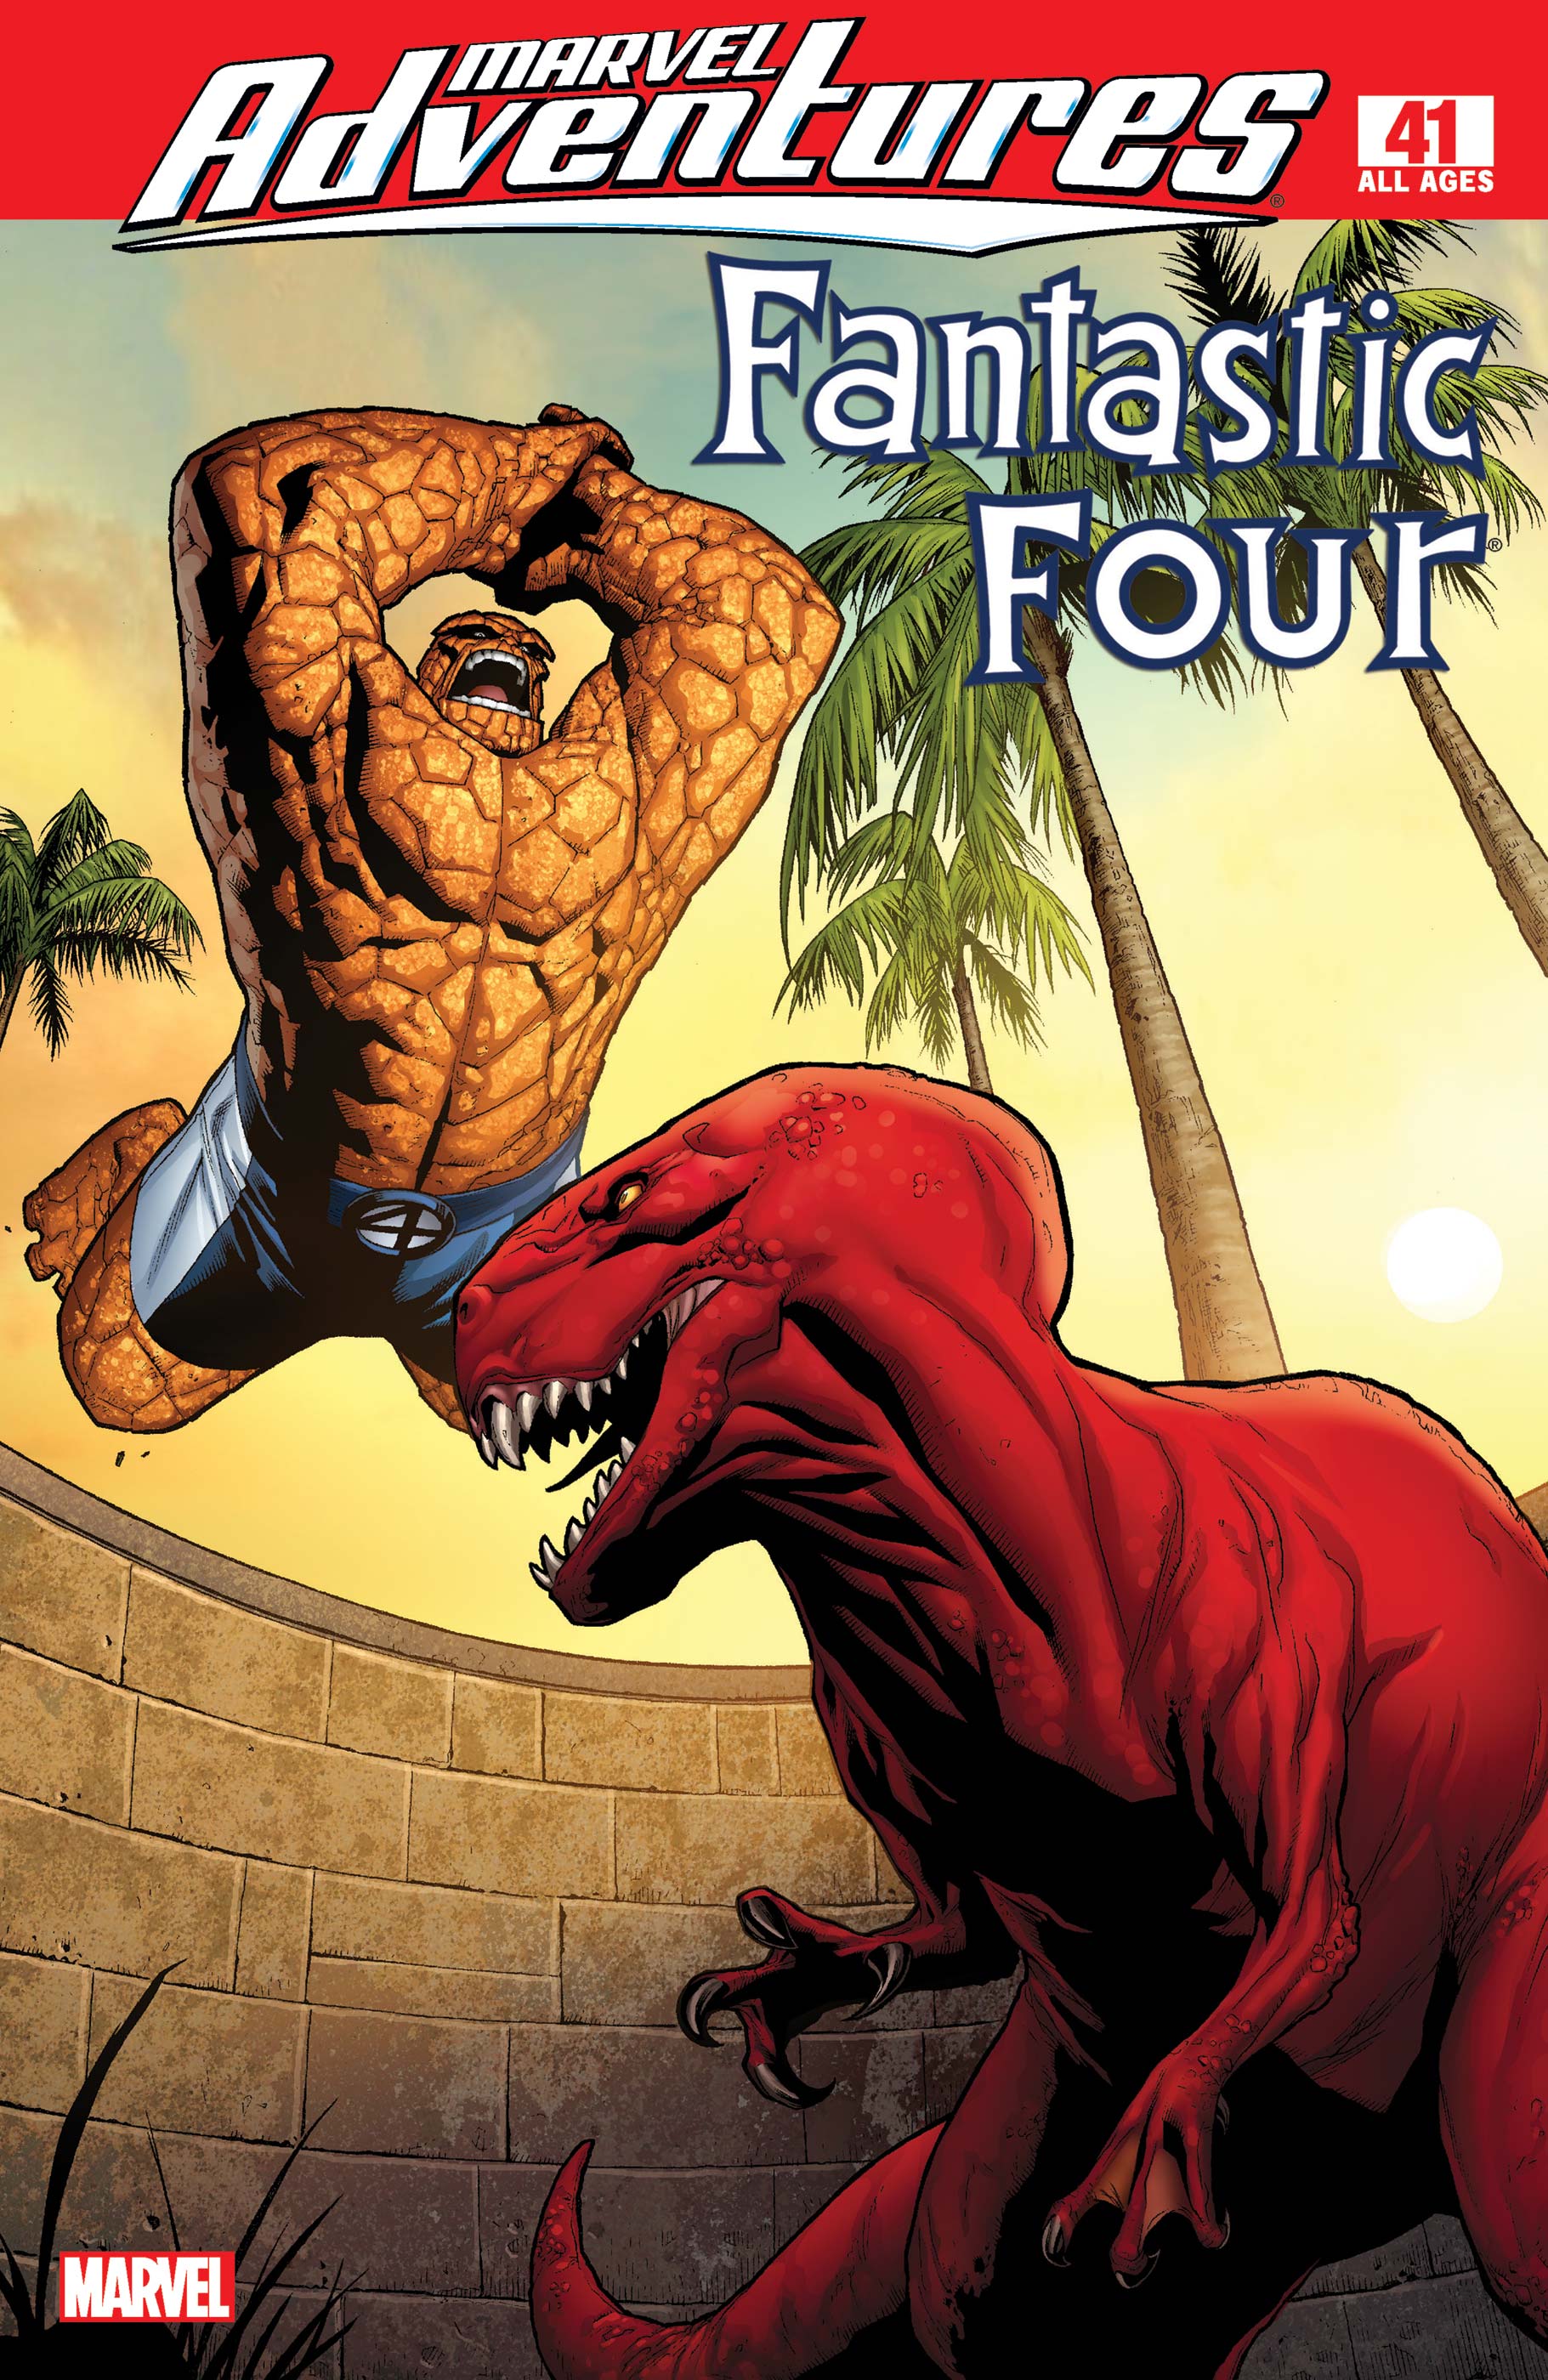 Marvel Adventures Fantastic Four (2005) #41